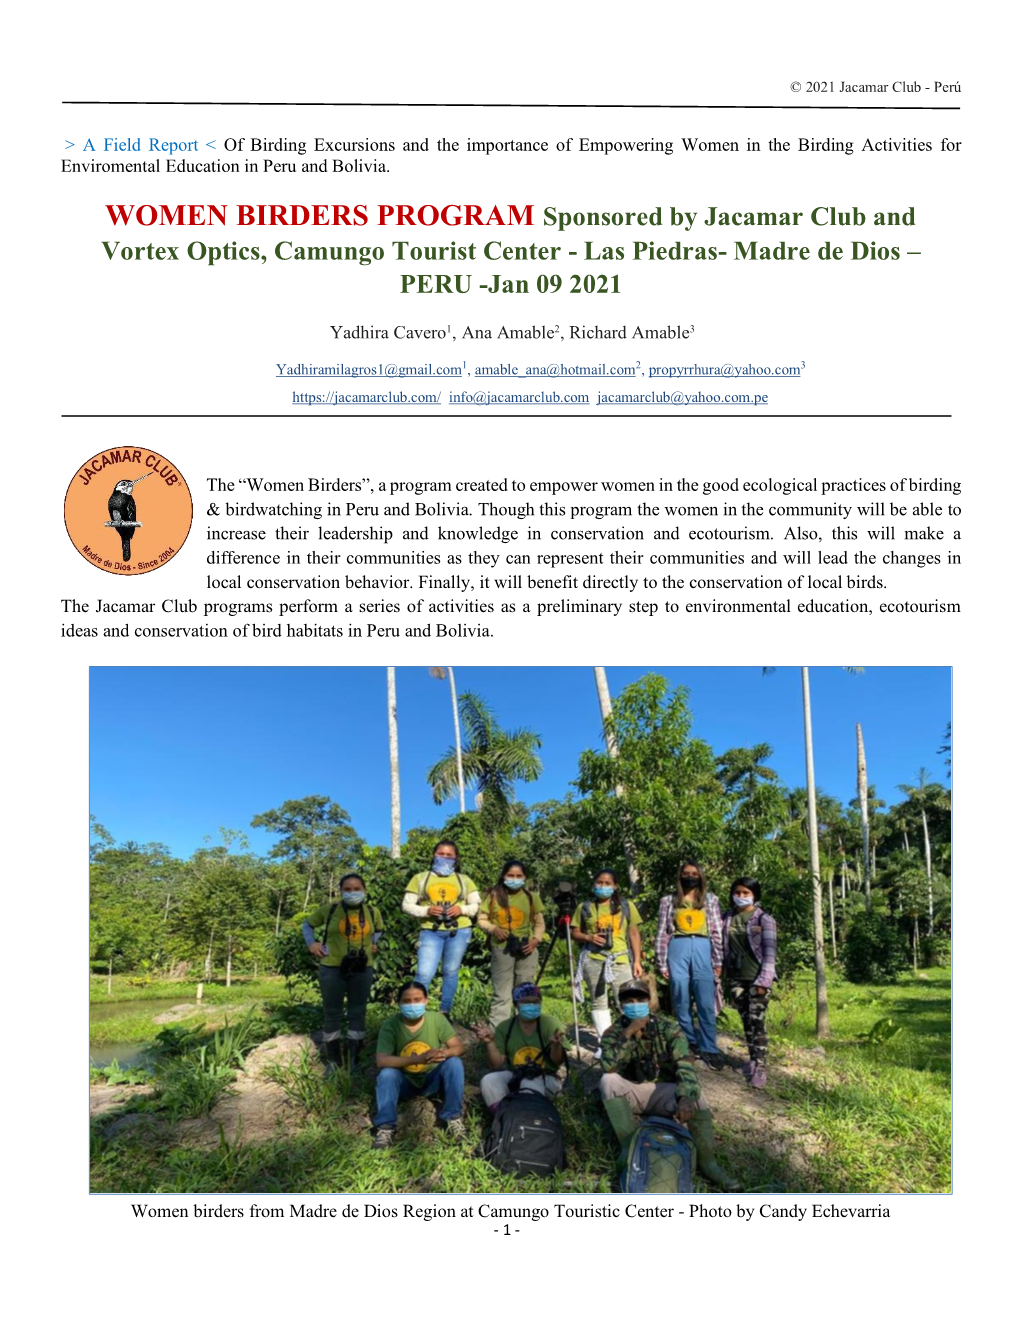 WOMEN BIRDERS PROGRAM Sponsored by Jacamar Club and Vortex Optics, Camungo Tourist Center - Las Piedras- Madre De Dios – PERU -Jan 09 2021